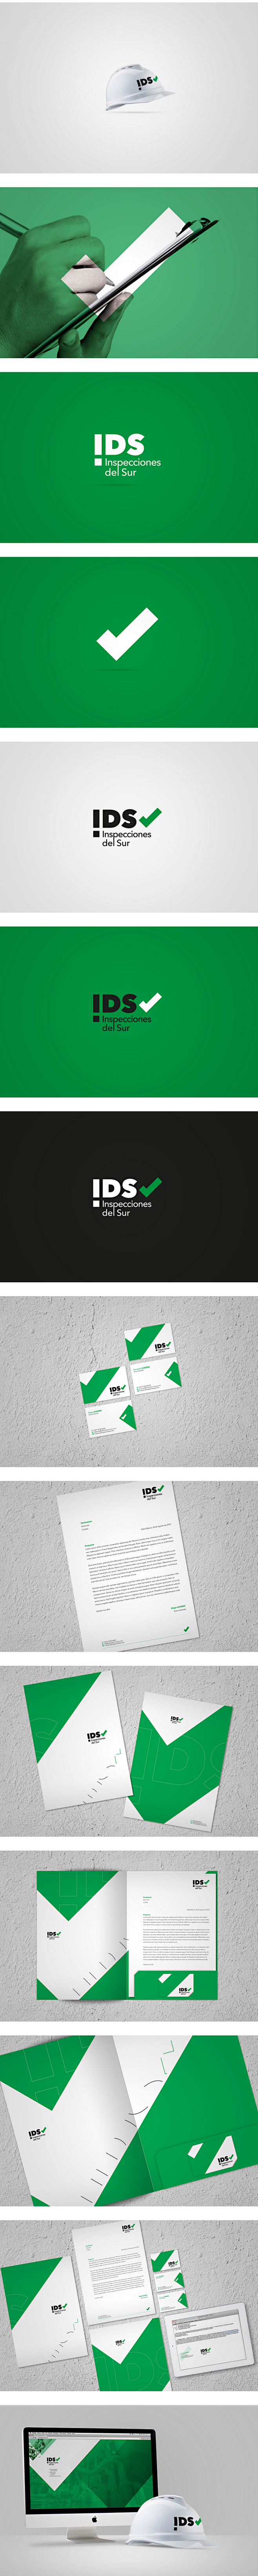 IDS品牌形象设计#Logo#品牌设计#...